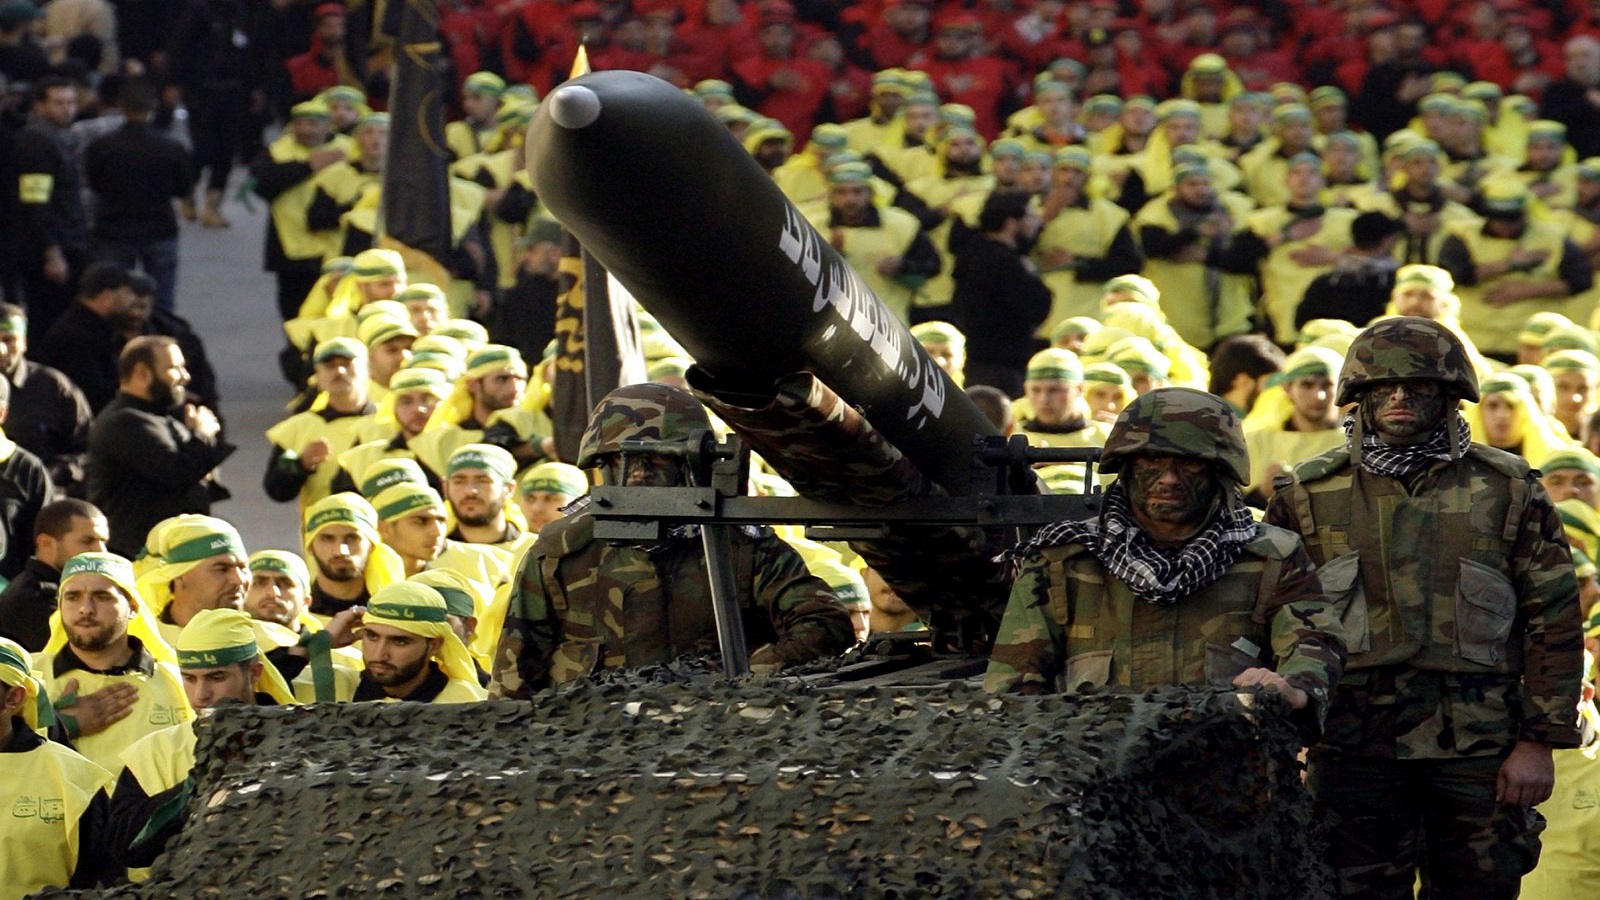 "هآرتس": صواريخ منظمات إيران تهديد وجودي لإسرائيل